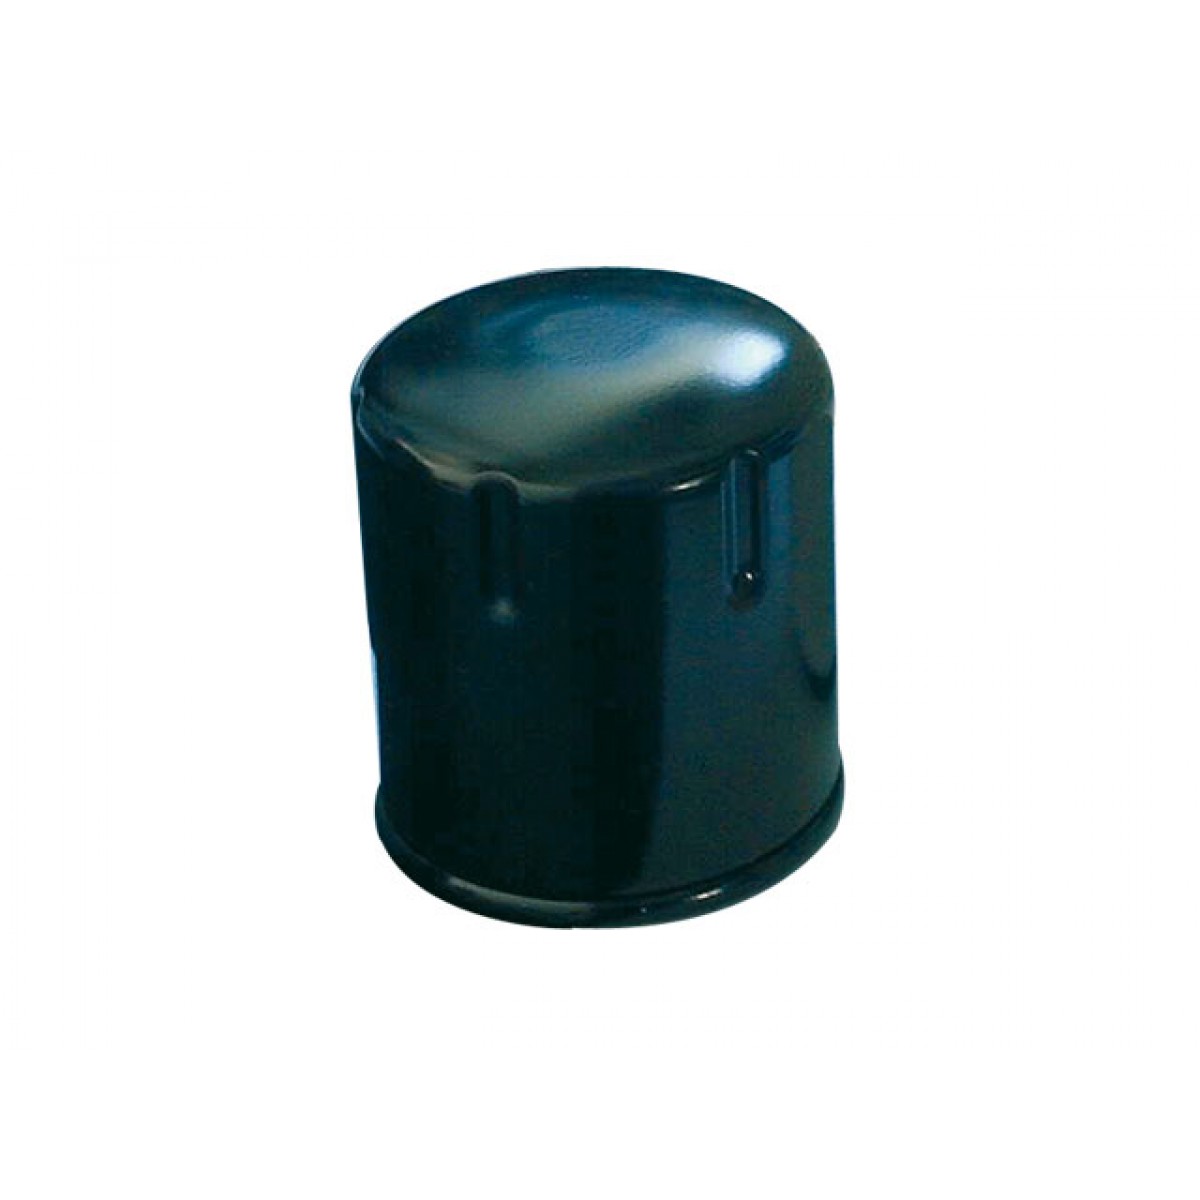 CAMBIO olio strumento filtro olio chiave BUZZETTI Universal 61-97mm Adly/Herchee AEON 